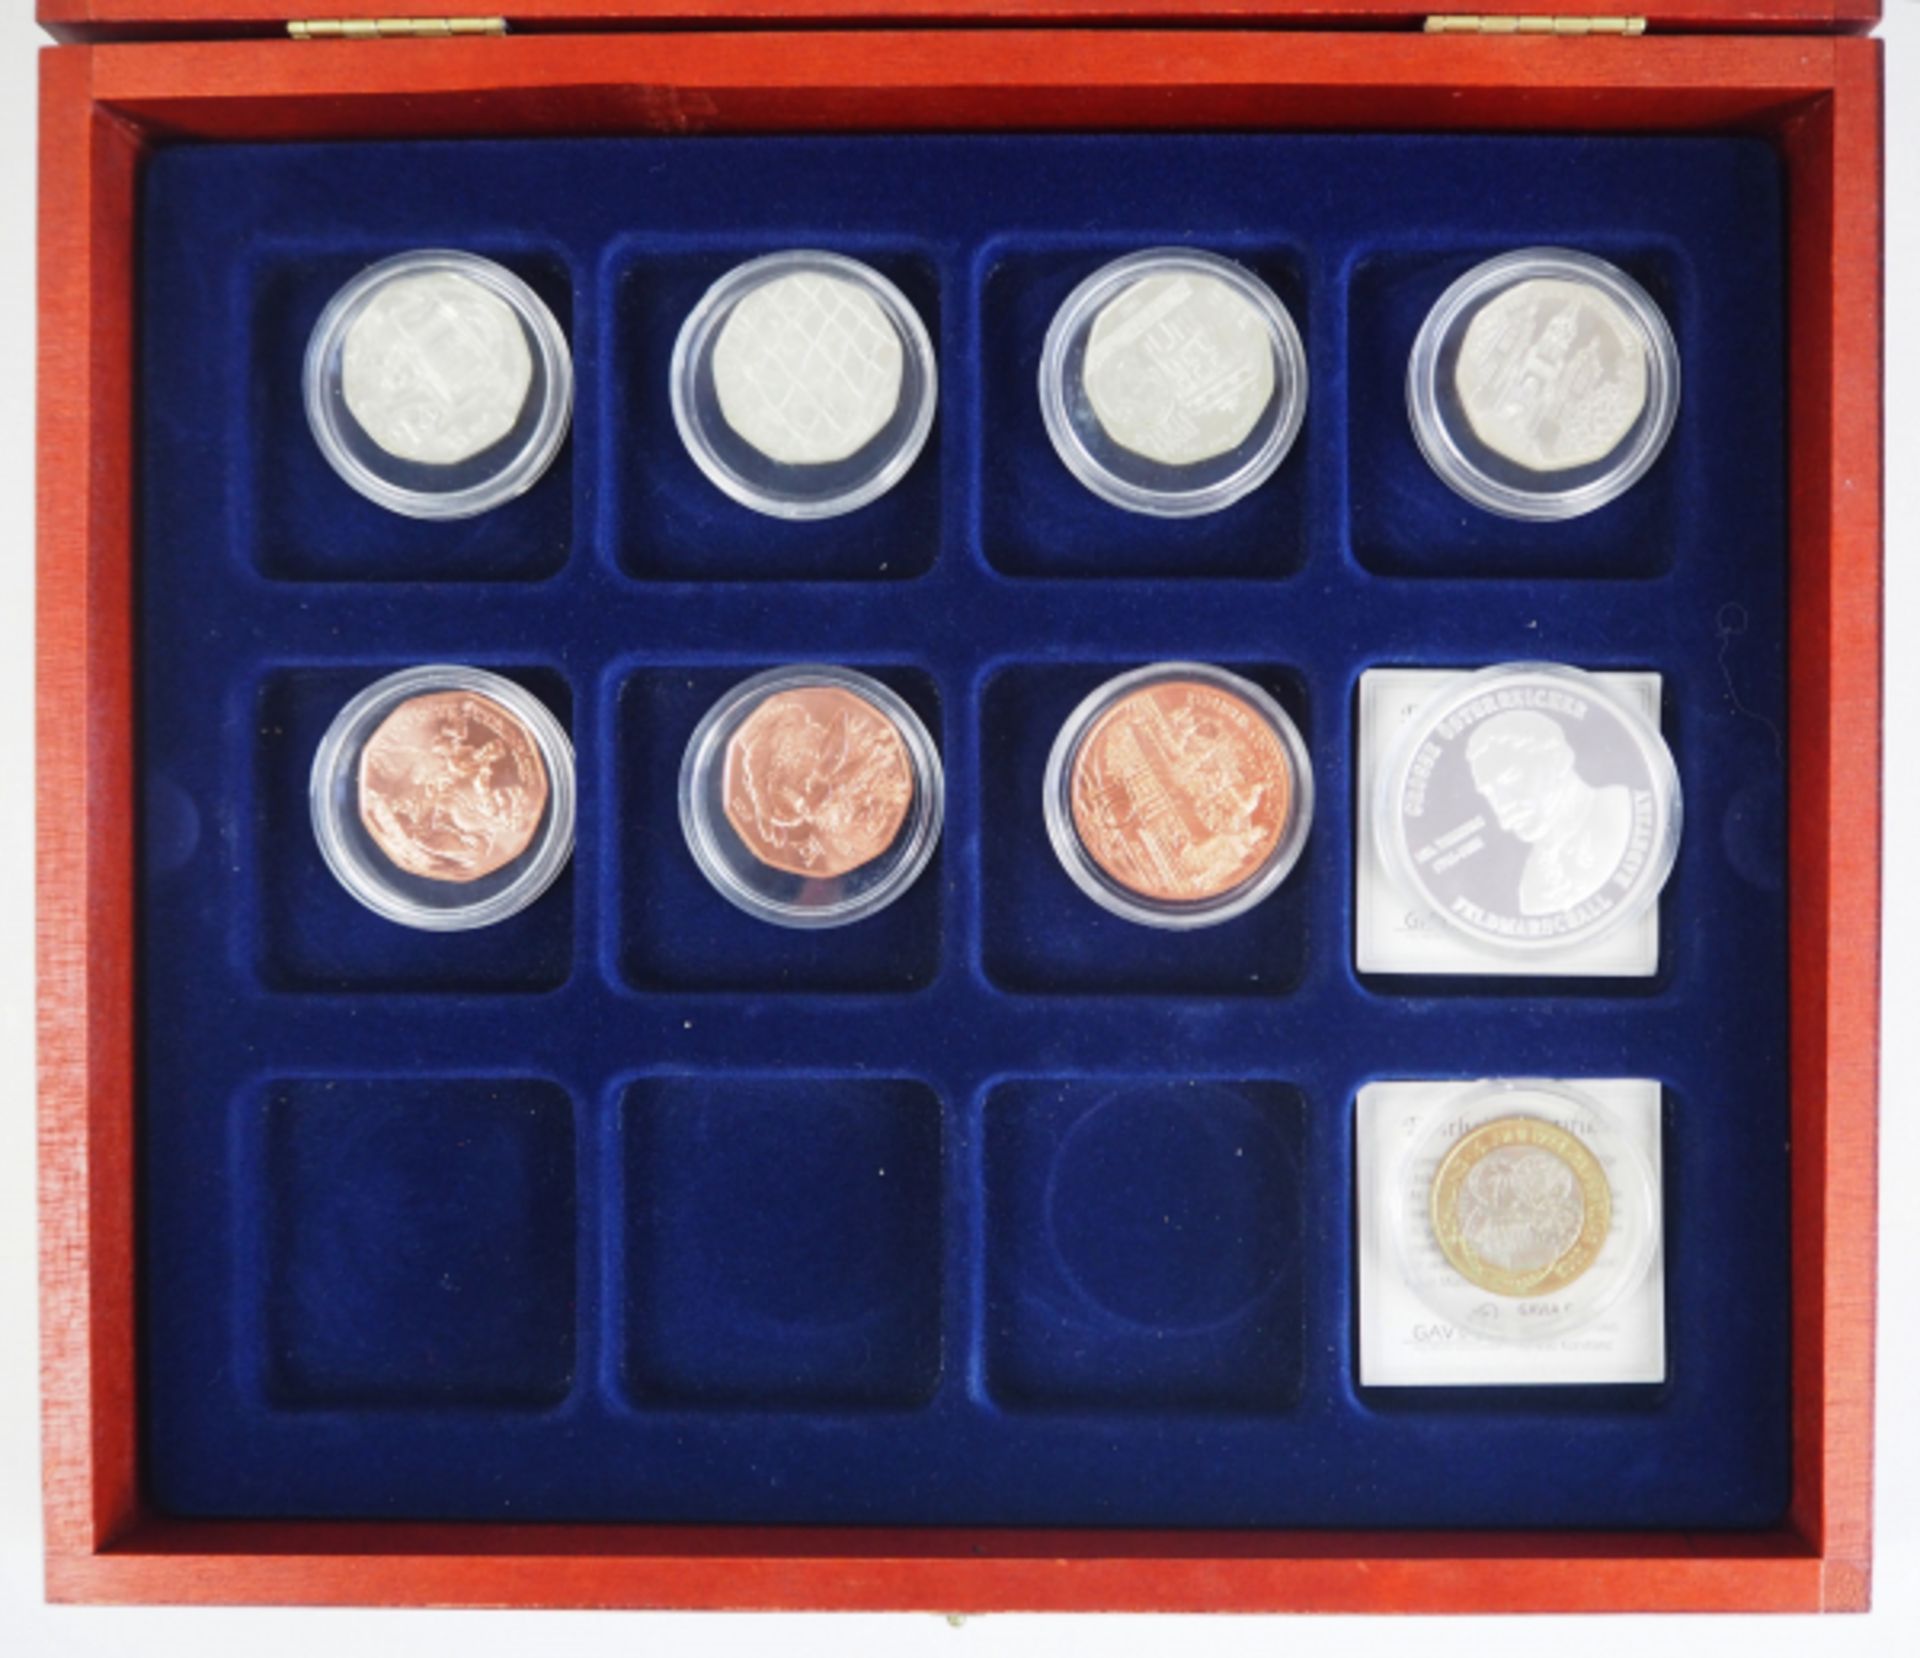 Österreich: Sammlung Silber Euro Münzen. Diverse, u.a. 10 und 5 Euro. Zumeist gekapselt, im - Bild 2 aus 3